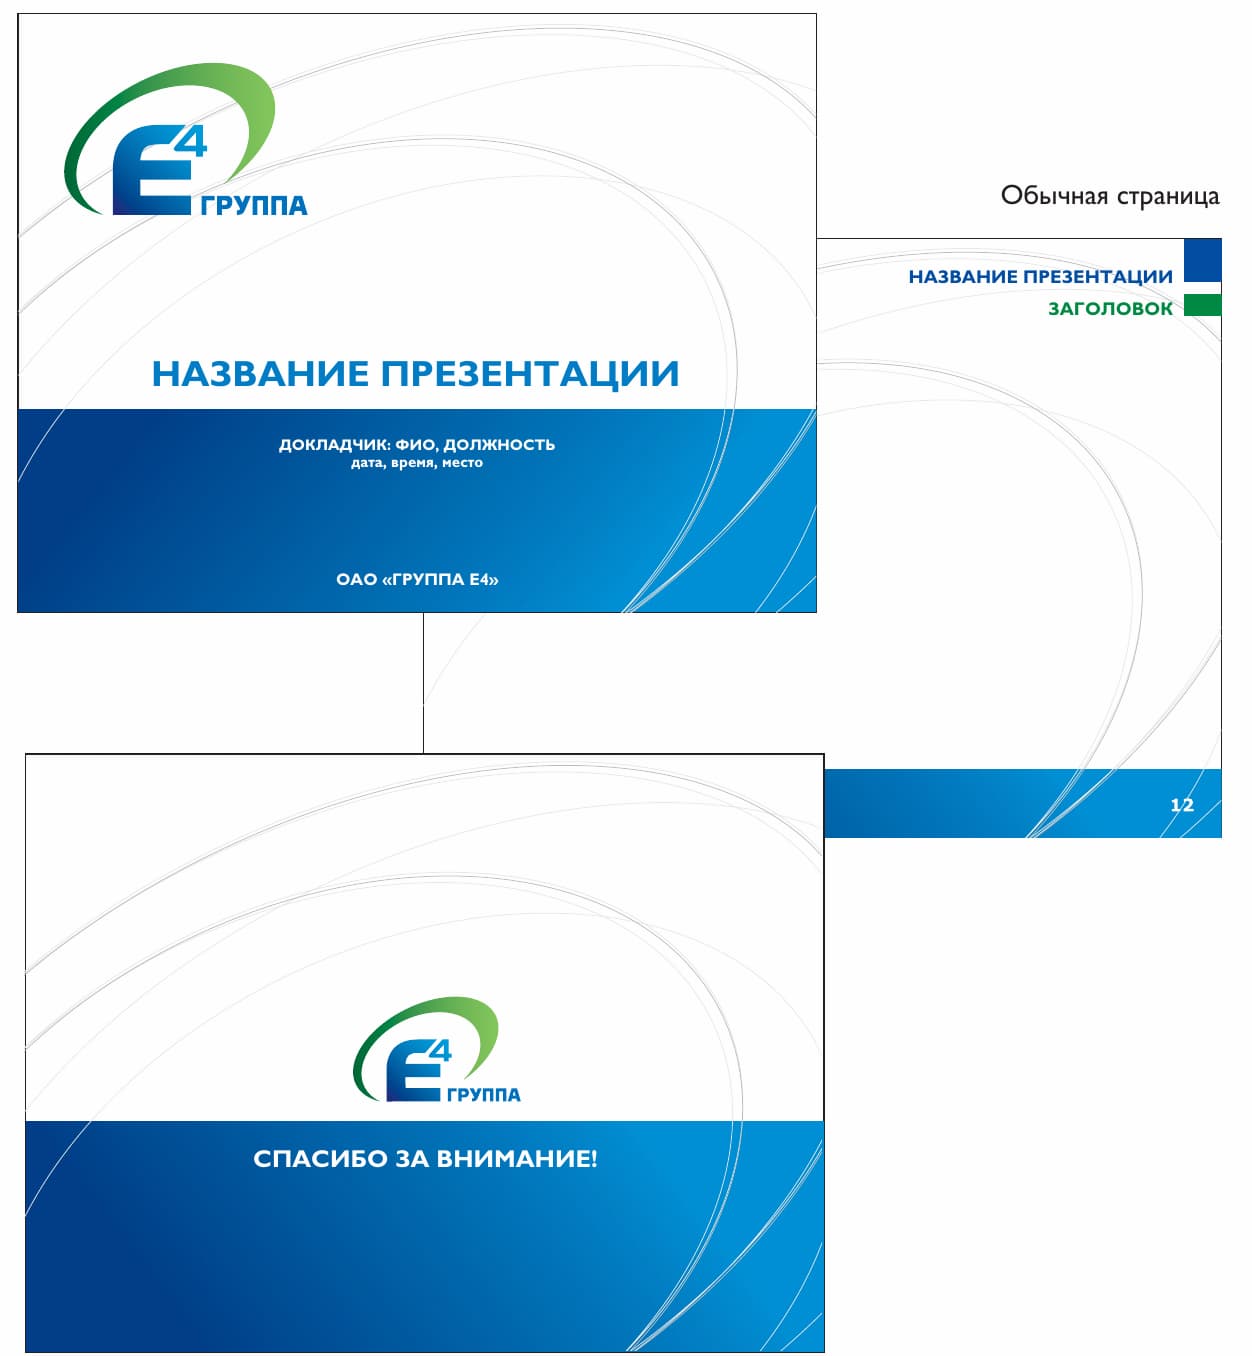 Шаблон оформления презентаций с главной, обычной и последней страницами из брендбука компании компании  «ГРУППА Е4»